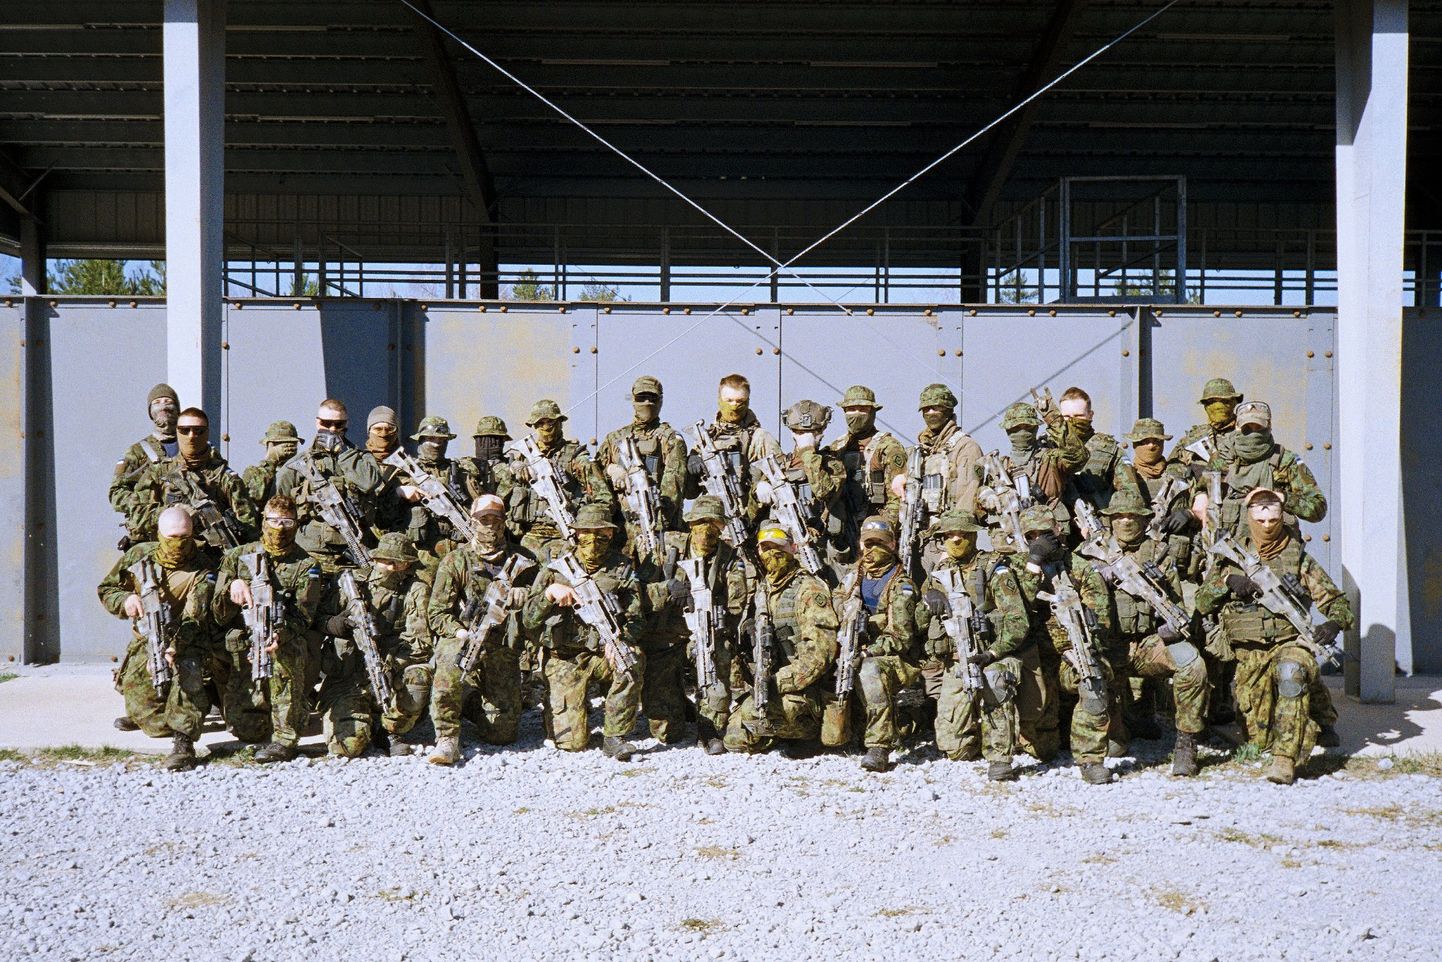 31 парень и девушка окончили срочную службу в подразделении Сил специальных операций (ССО), тем самым пополнив резерв войск спецназа.